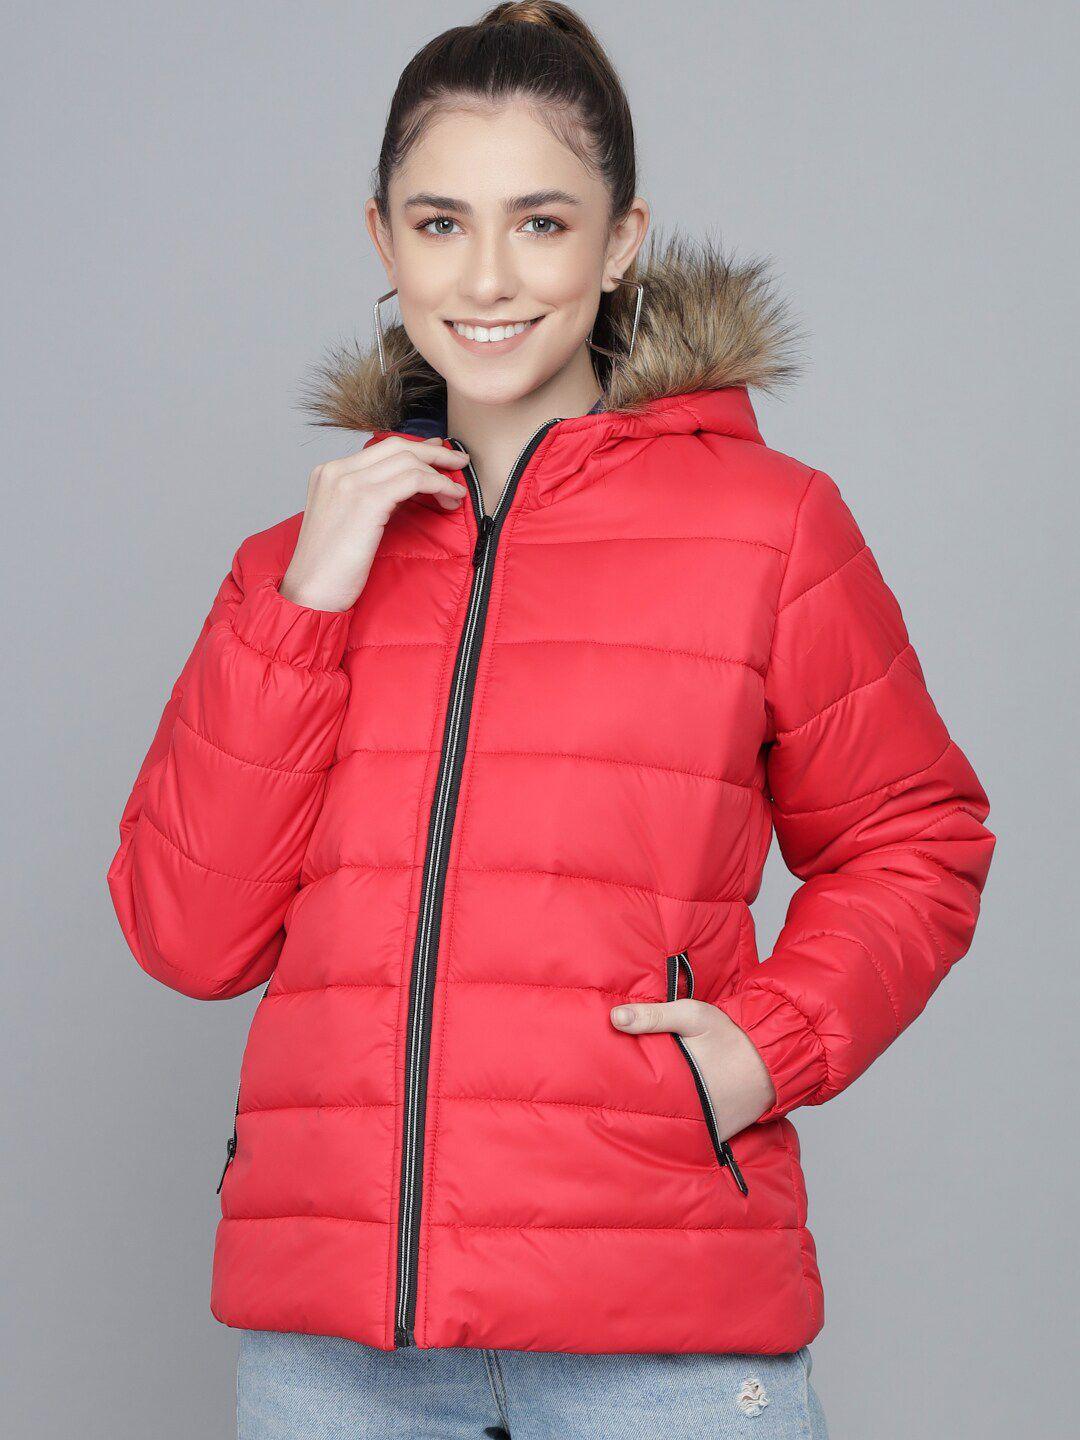 kotty-women-red-lightweight-parka-jacket